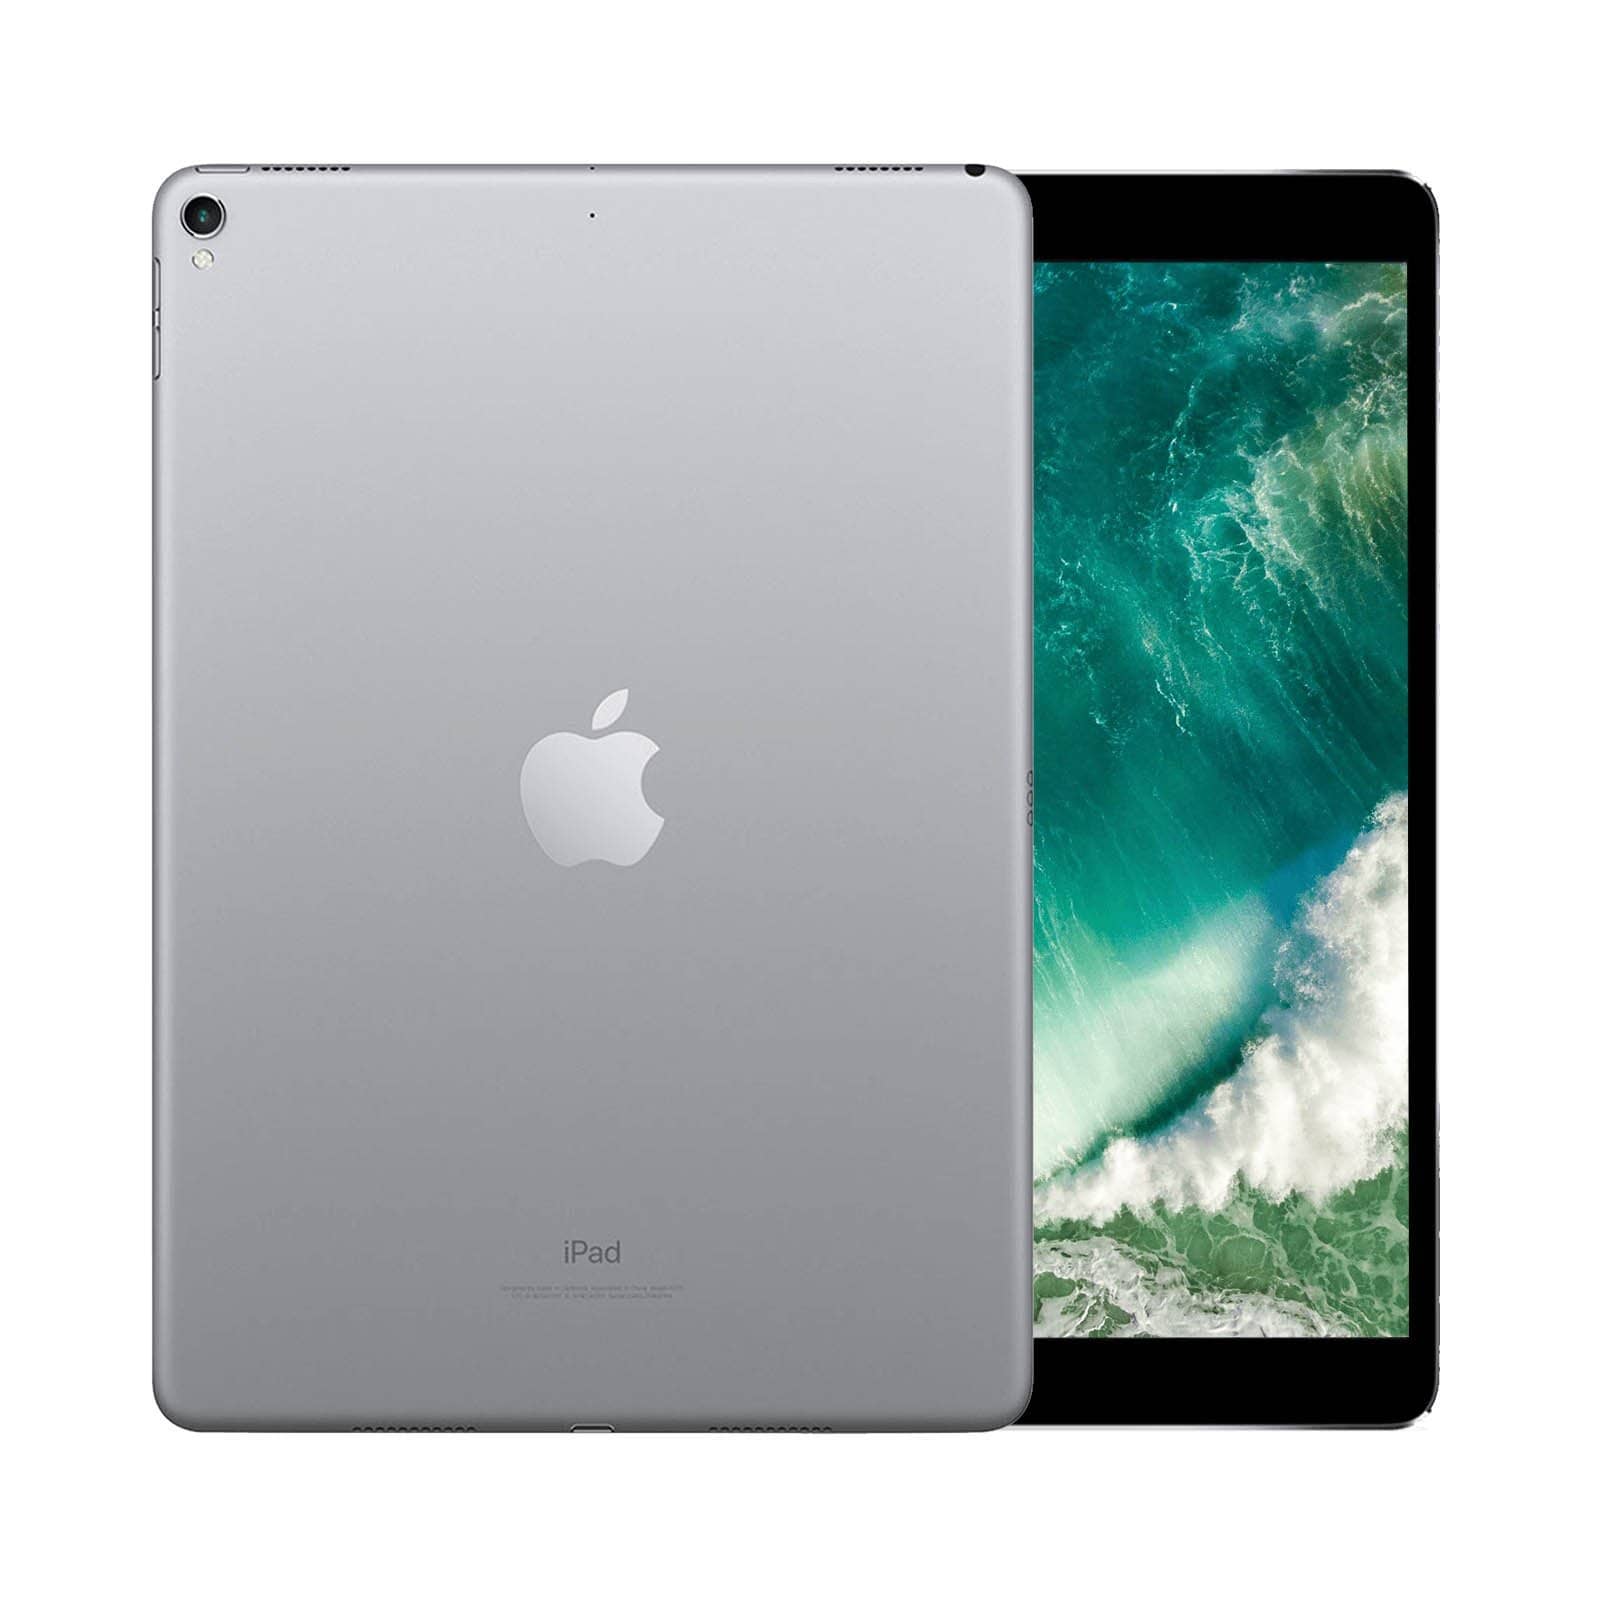 iPad Pro 10.5 Inch 64GB Space Grey Pristine - WiFi 64GB Space Grey Pristine